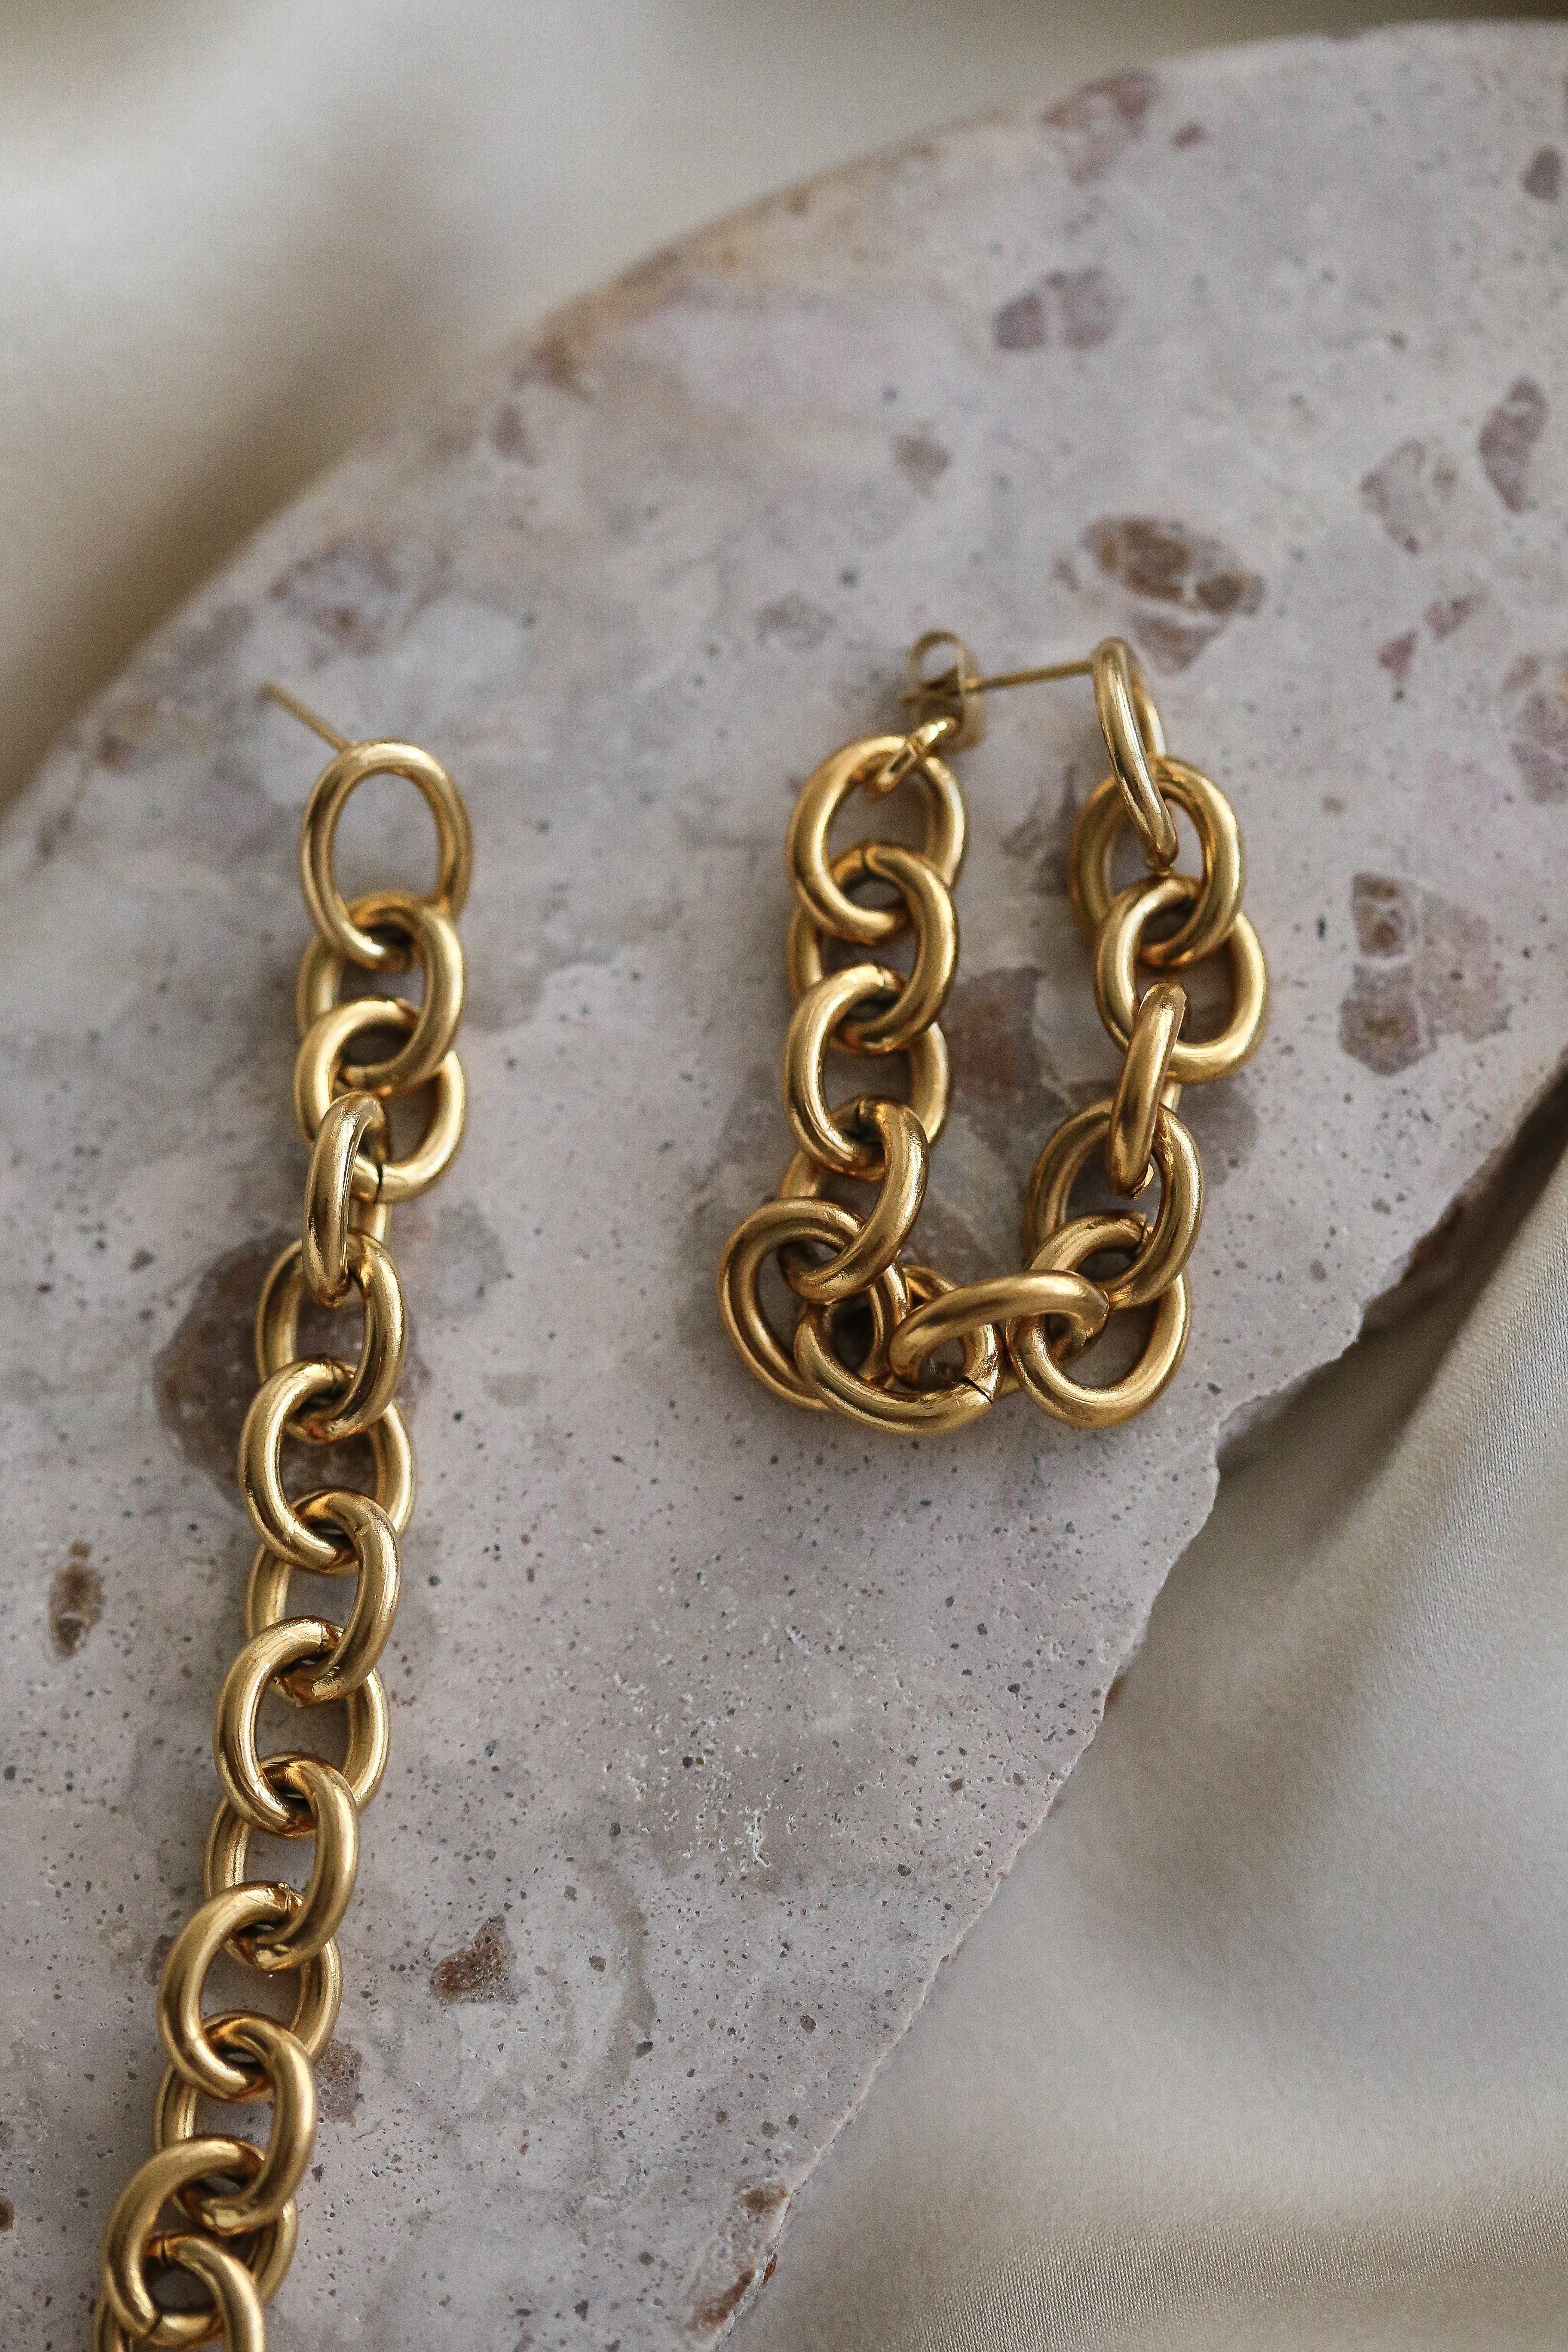 Nieve Earrings - Boutique Minimaliste has waterproof, durable, elegant and vintage inspired jewelry